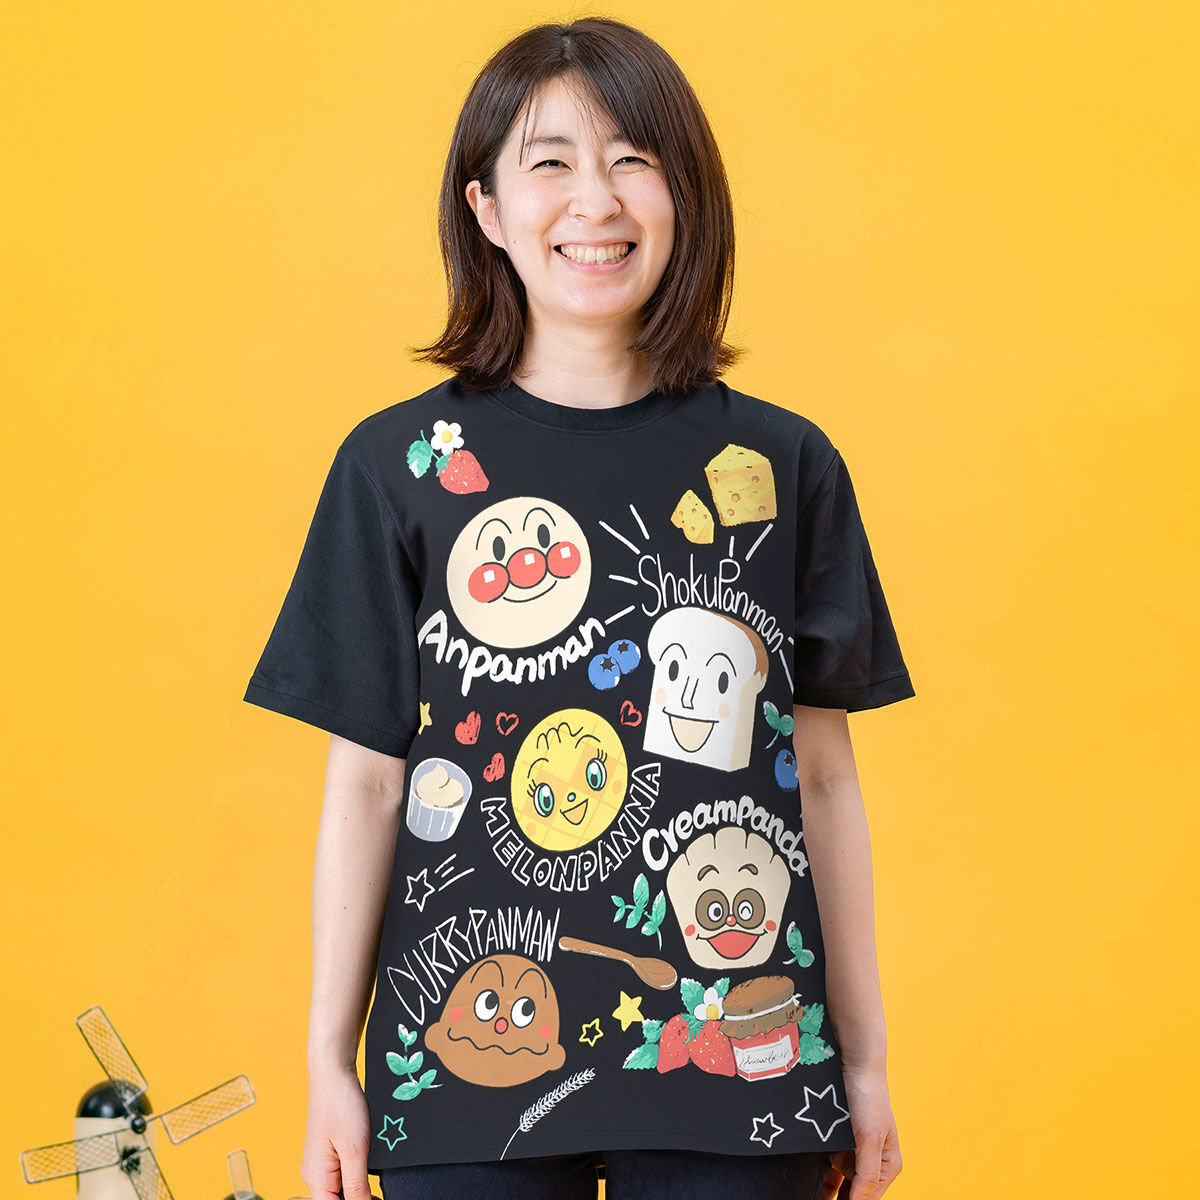 49000円 有名ブランド Tシャツ